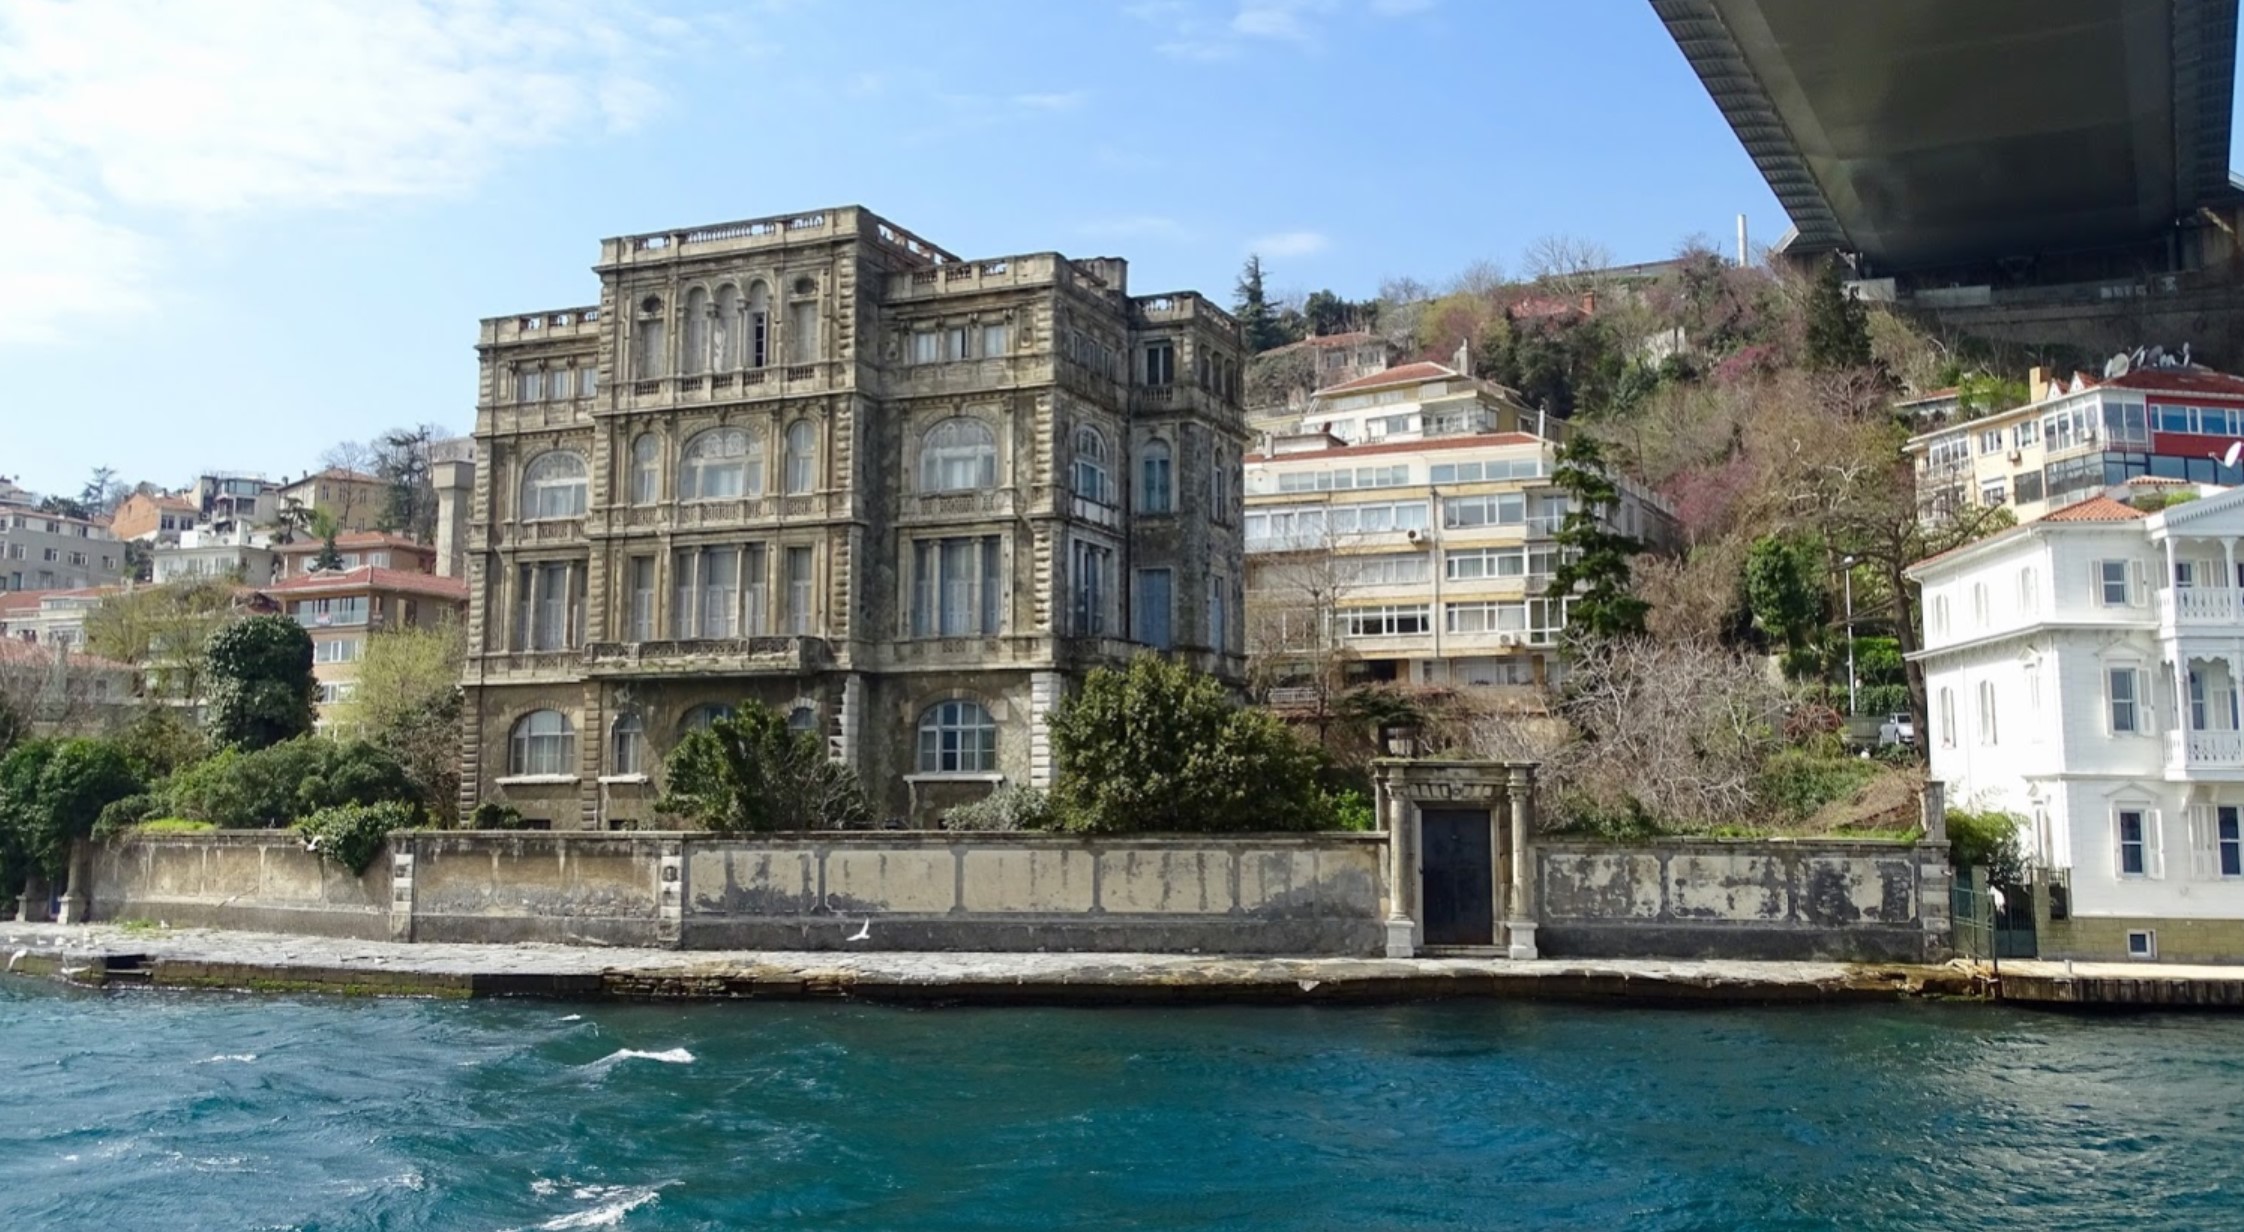 krijgen G Moreel Turkse villa te koop, duurste ter wereld: heeft u 85 miljoen euro? -